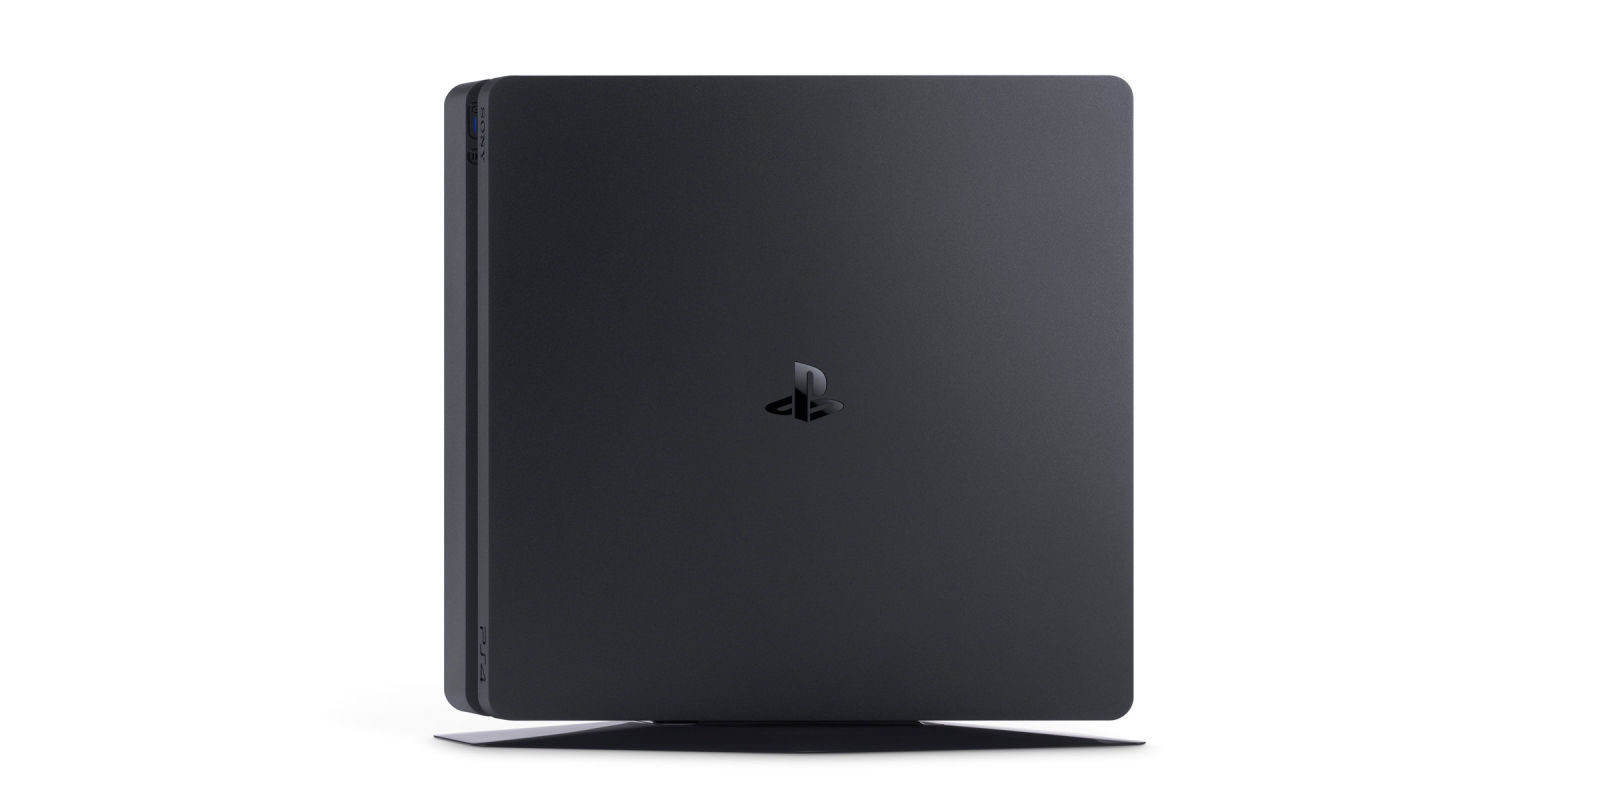 PlayStation 4 actualiza su firmware a la versión 4.73